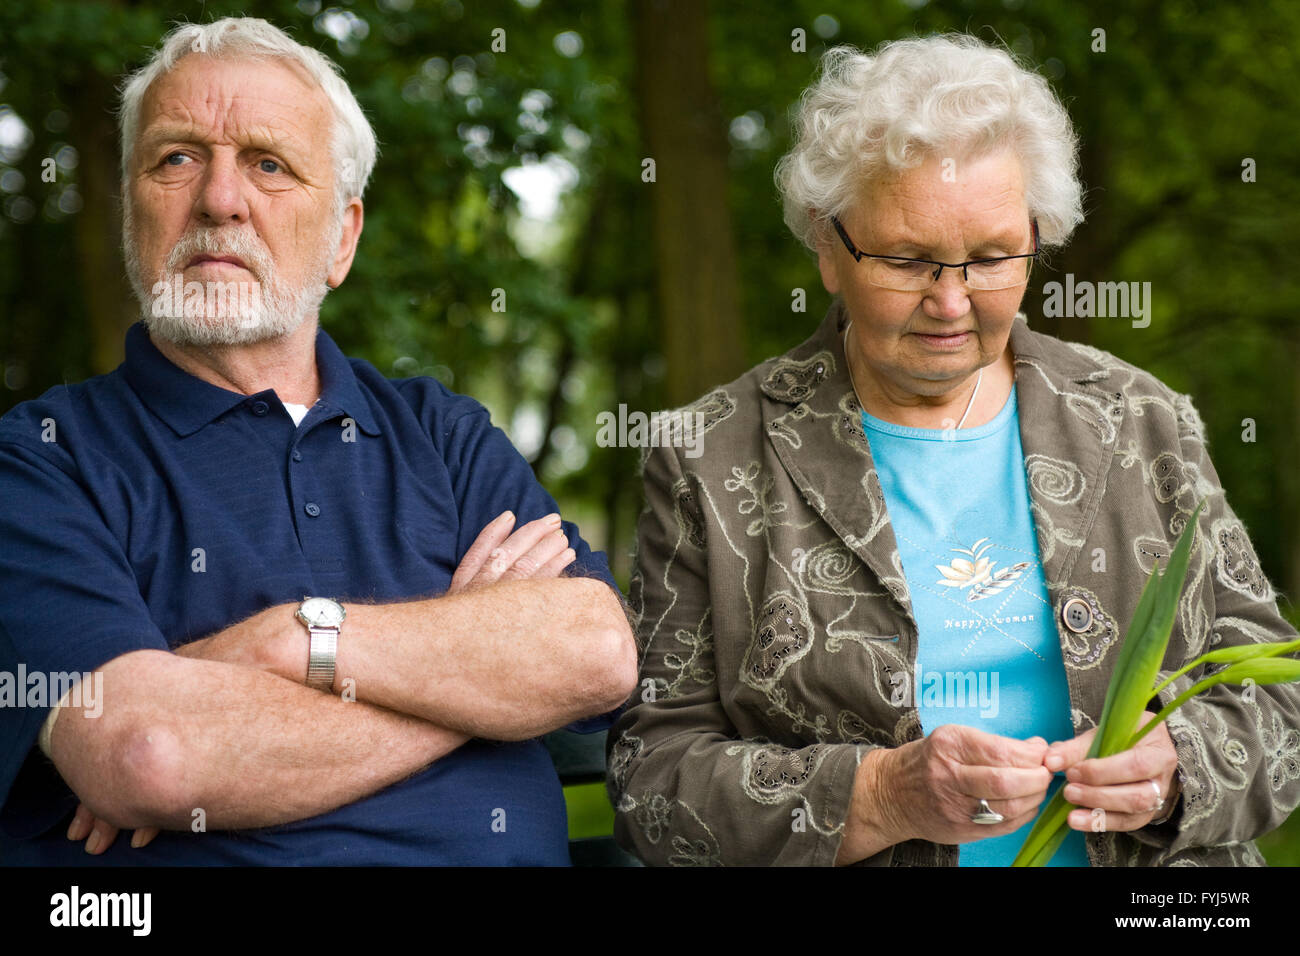 Elderly couple enjoying nature Stock Photo